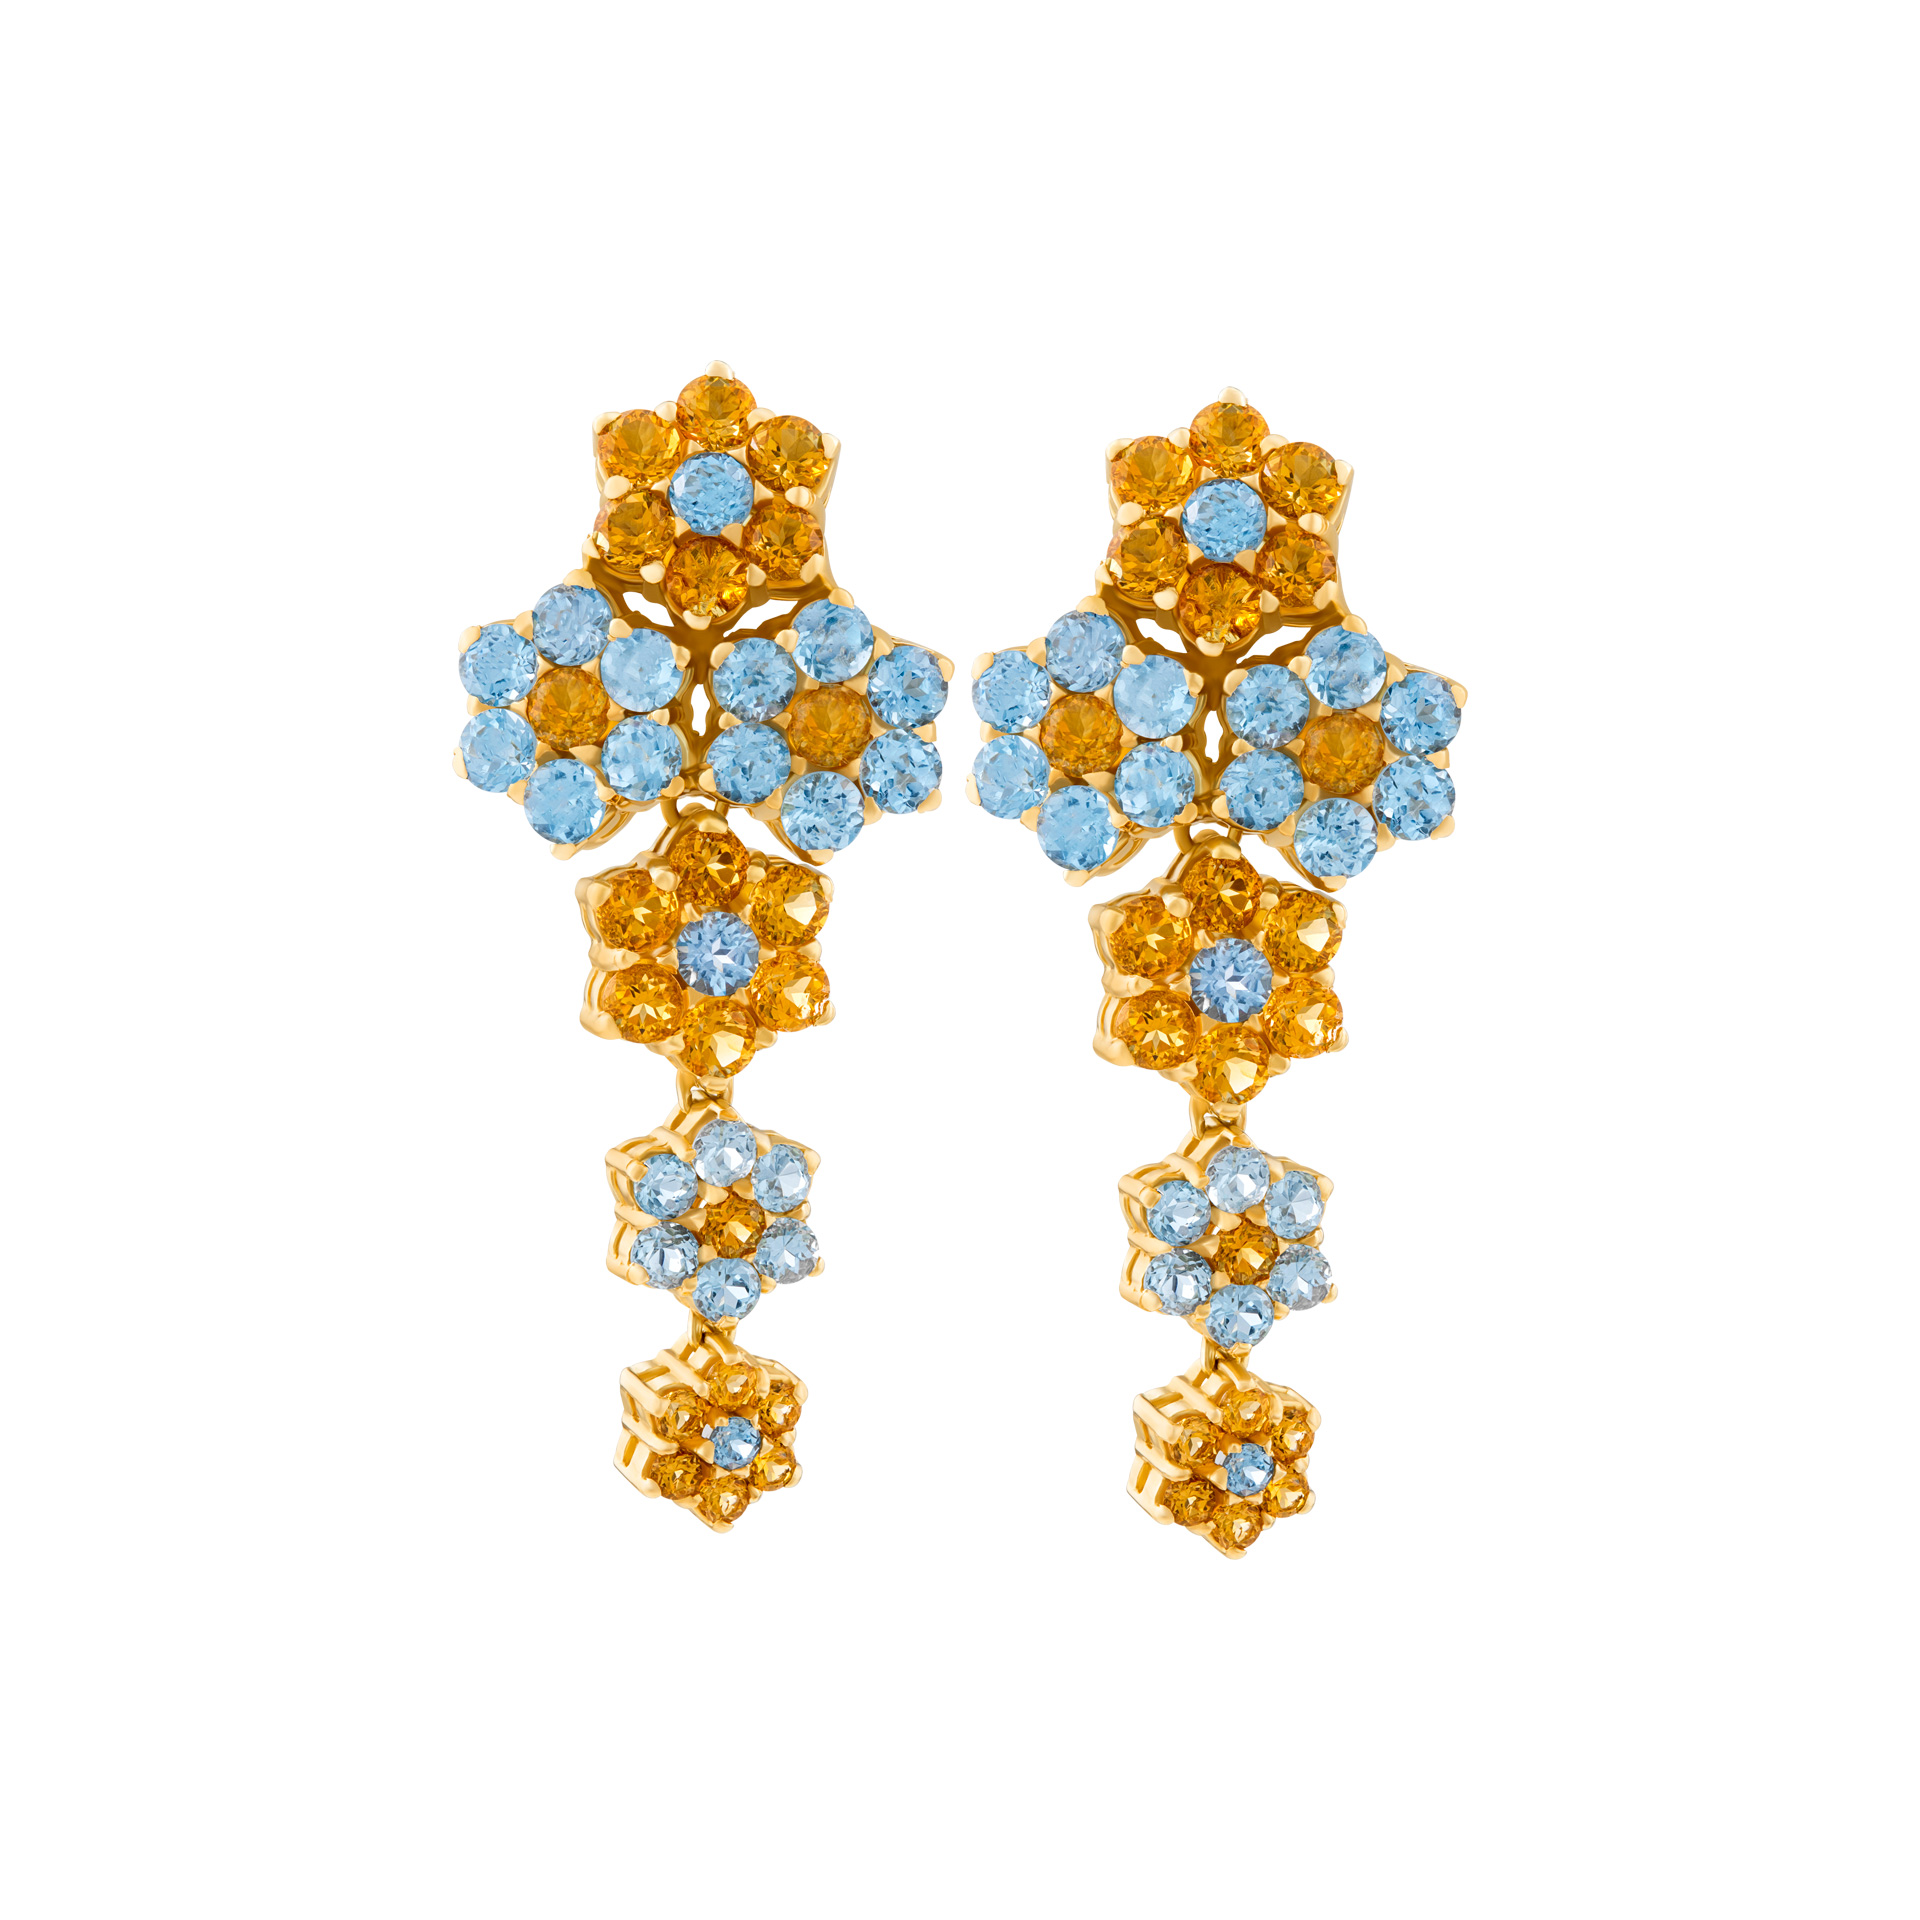  Dangle earrings mounted in 18k gold image 1